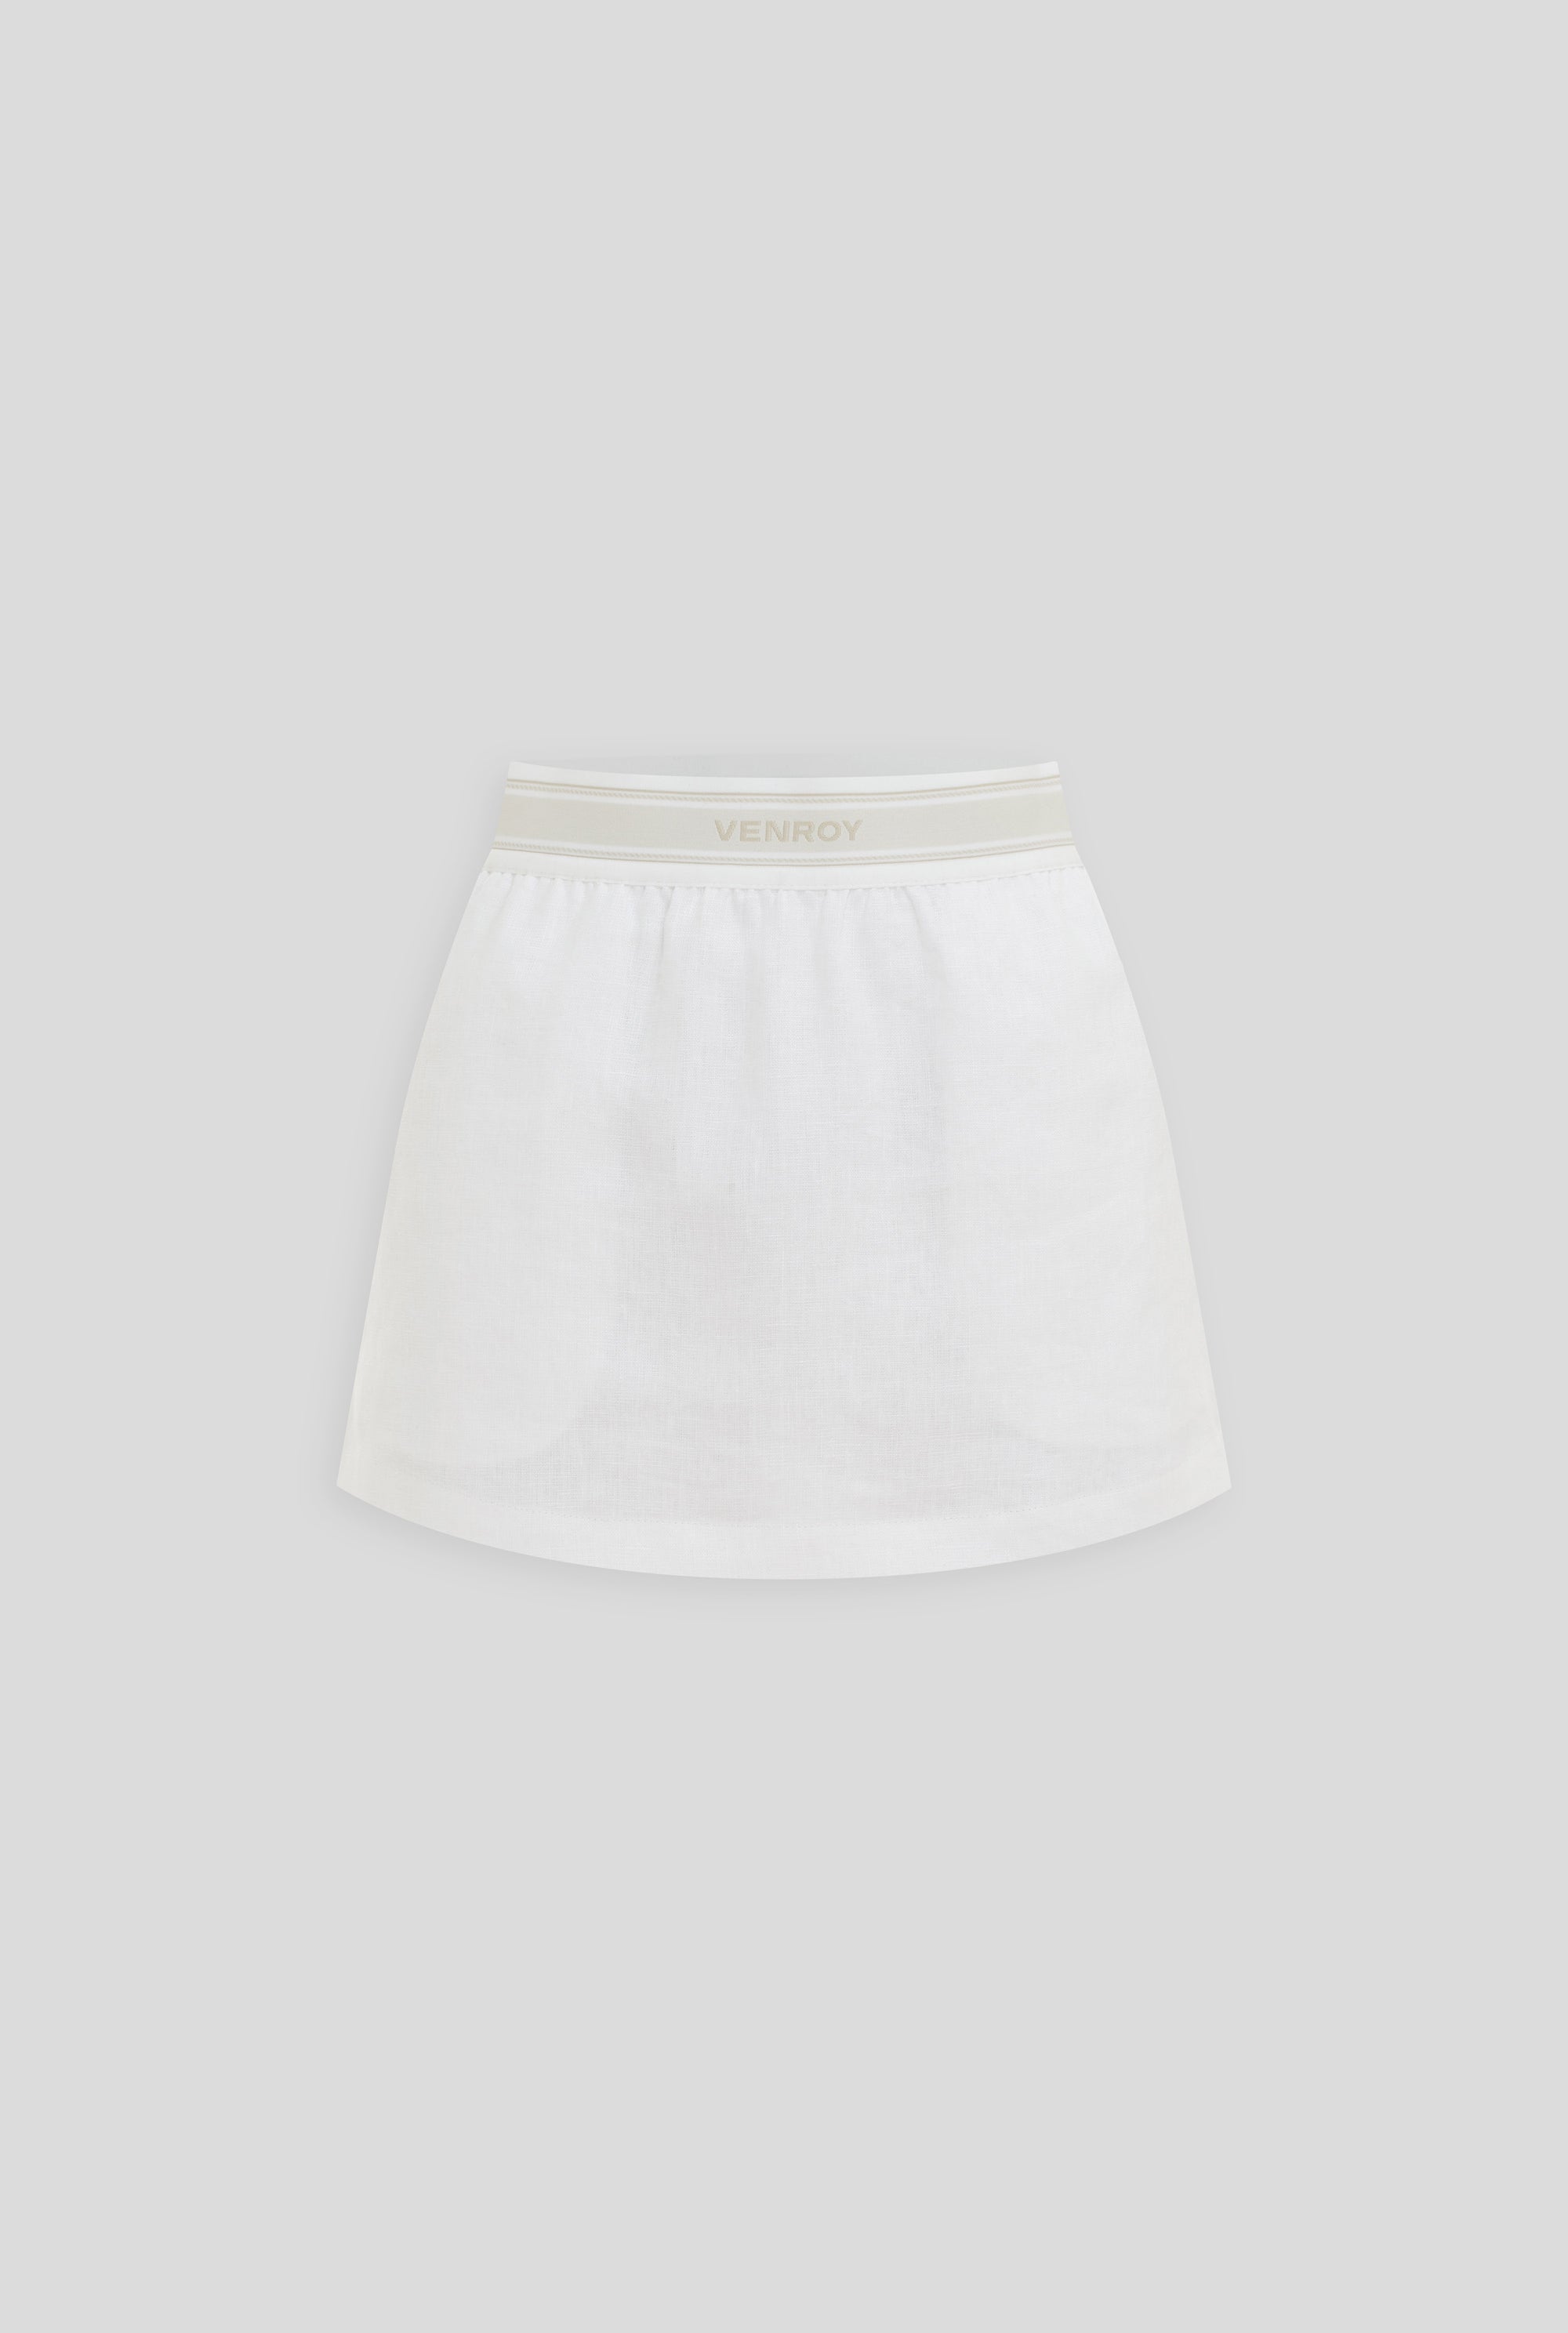 Lounge Skirt - White/Venroy Logo